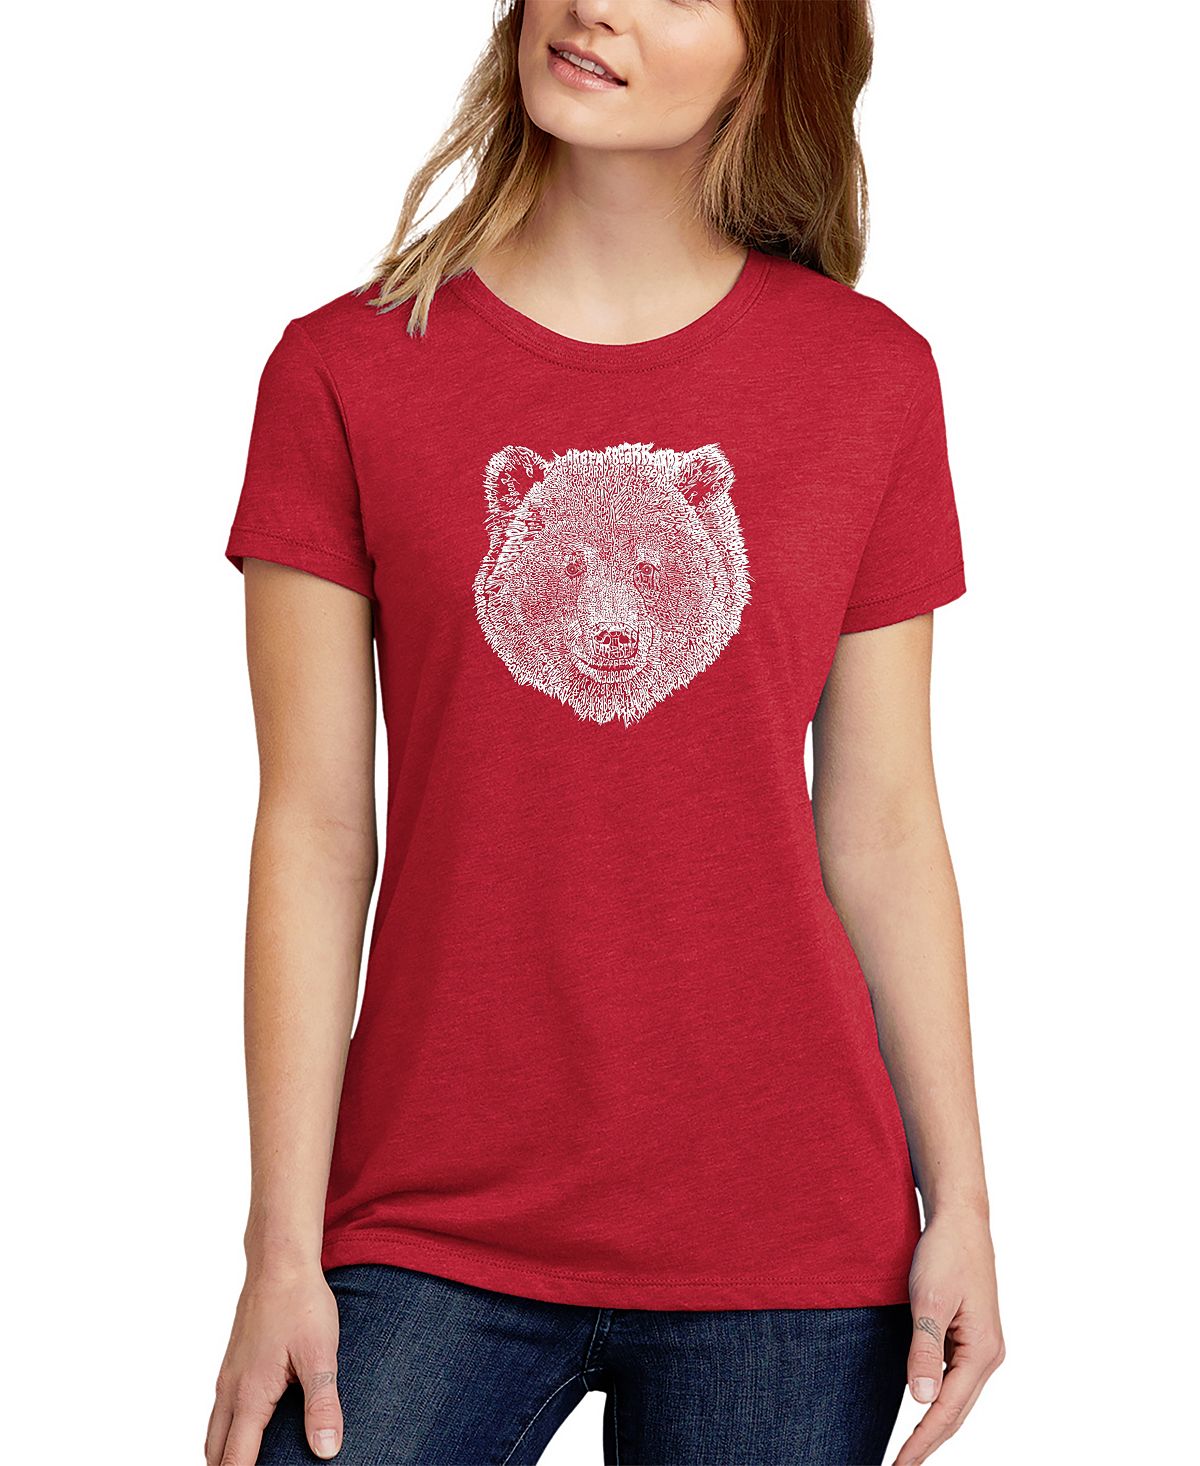 Женская футболка premium blend word art bear face LA Pop Art, красный